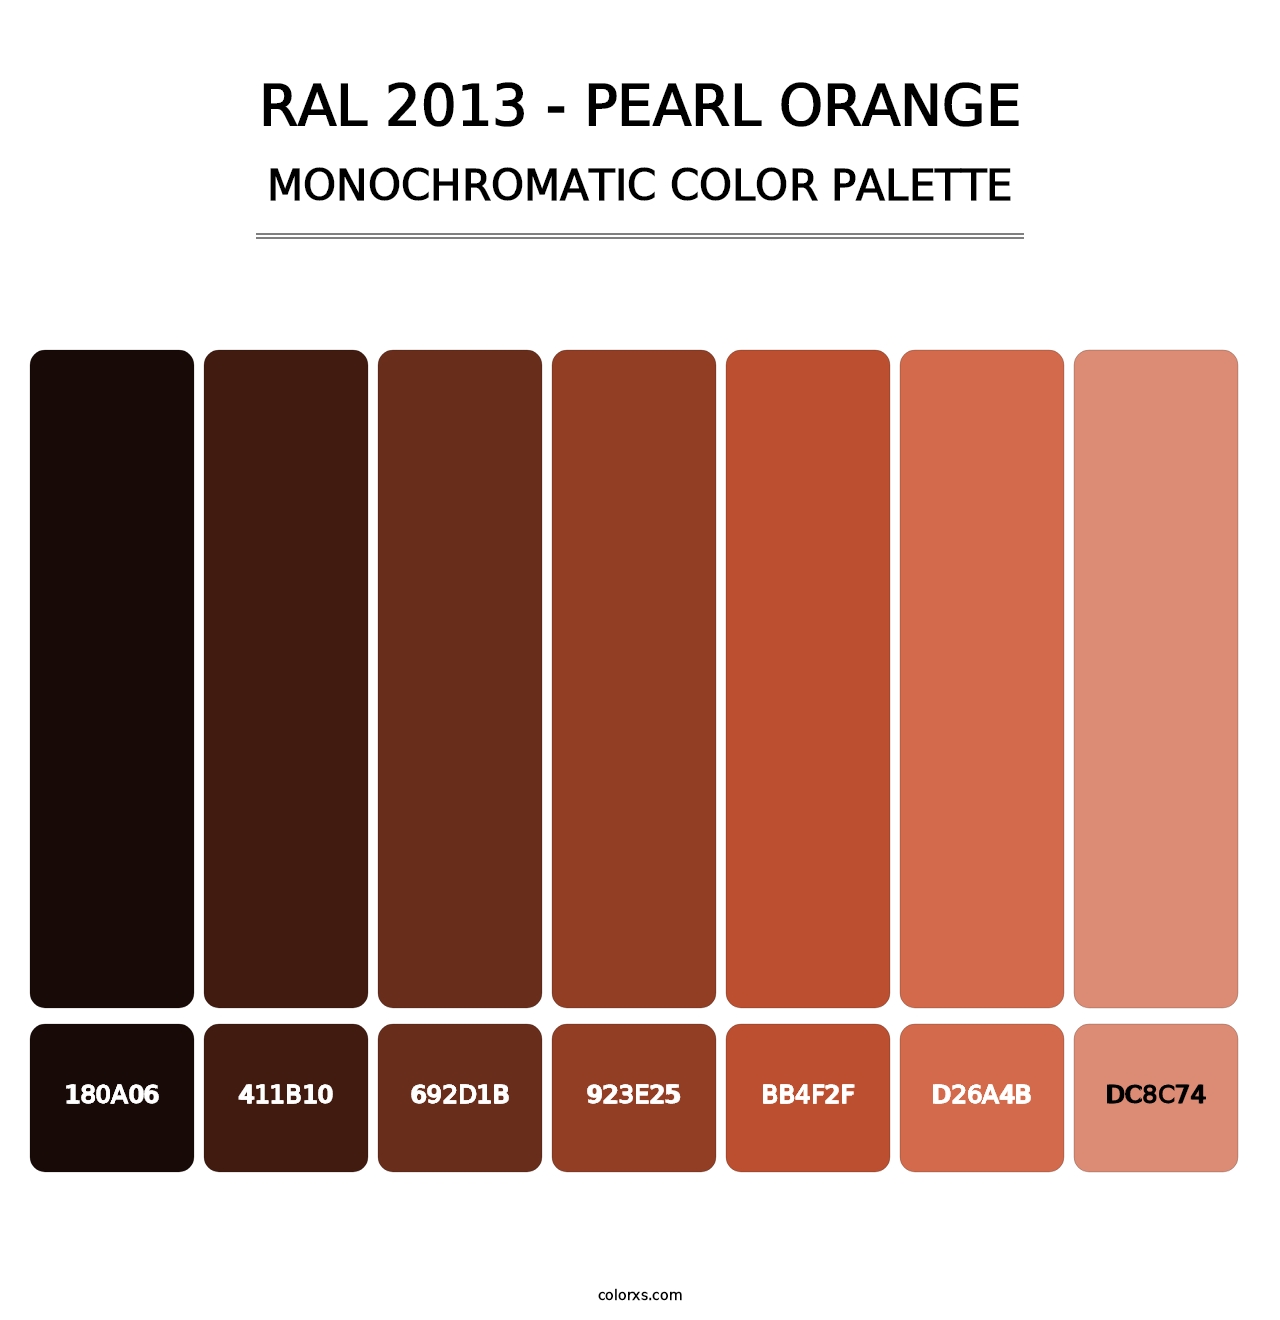 RAL 2013 - Pearl Orange - Monochromatic Color Palette